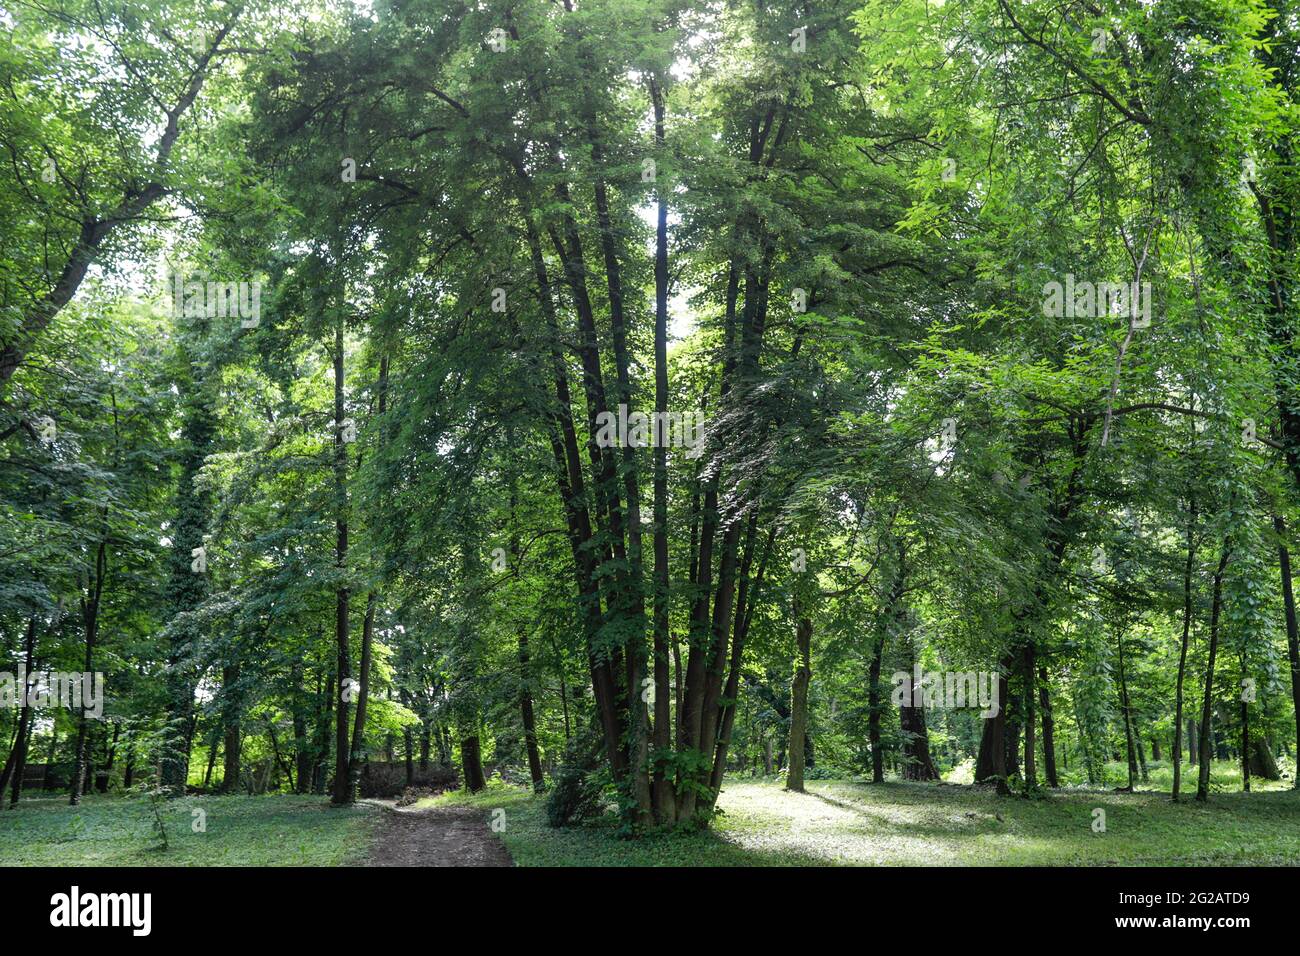 Albero di tronchi multipli (albero di tronchi multipli o albero multi-stelo) in una foresta in Romania. Foto Stock